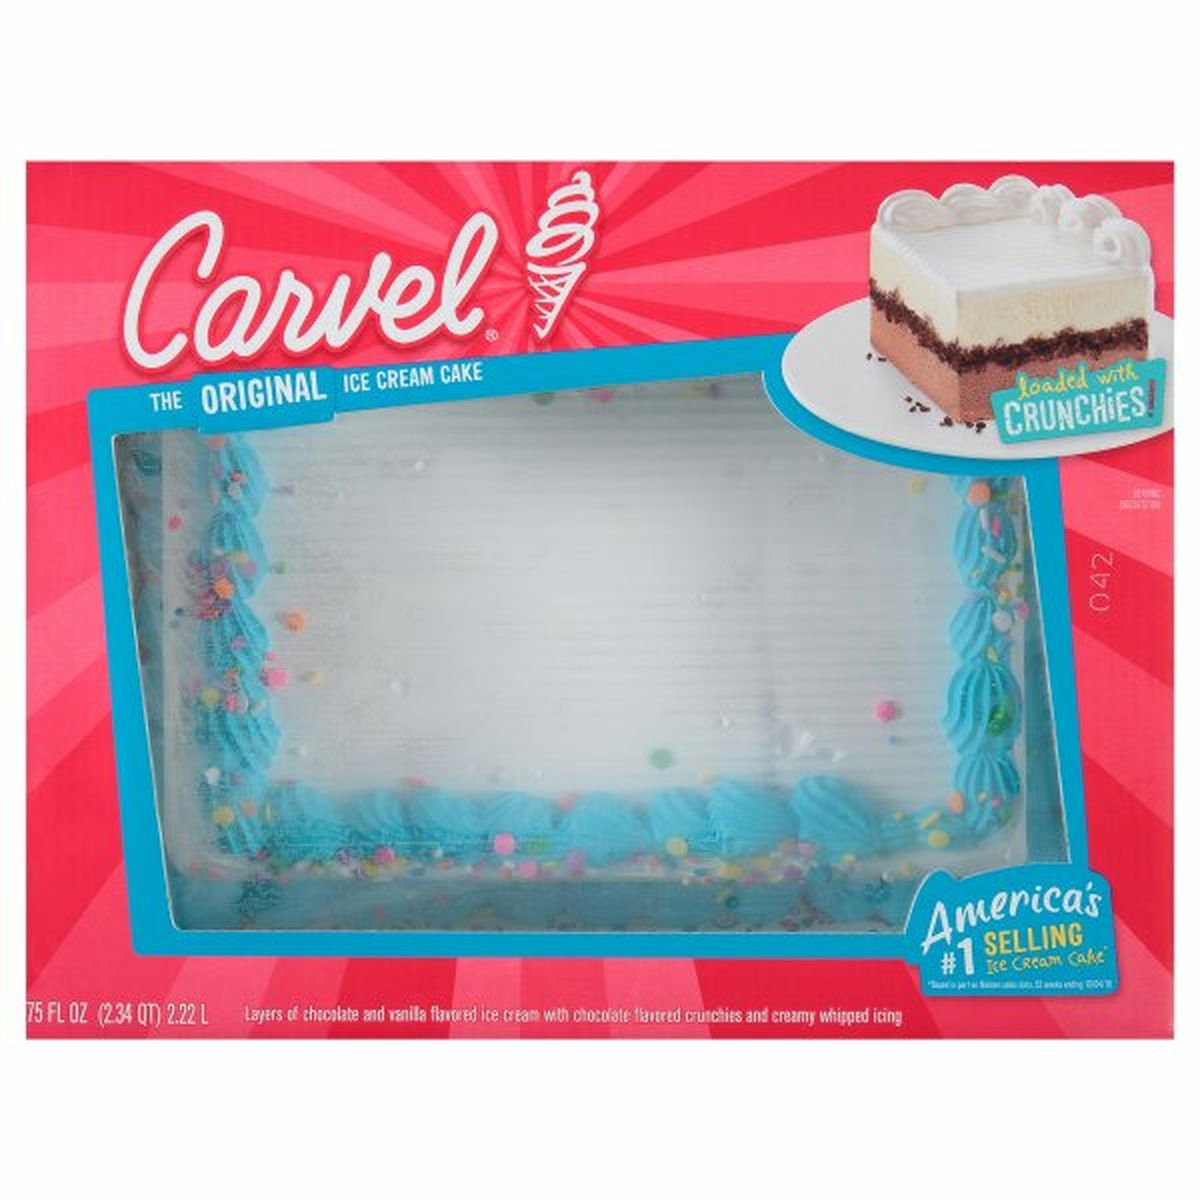 Calories in Carvel Ice Cream Cake, Original